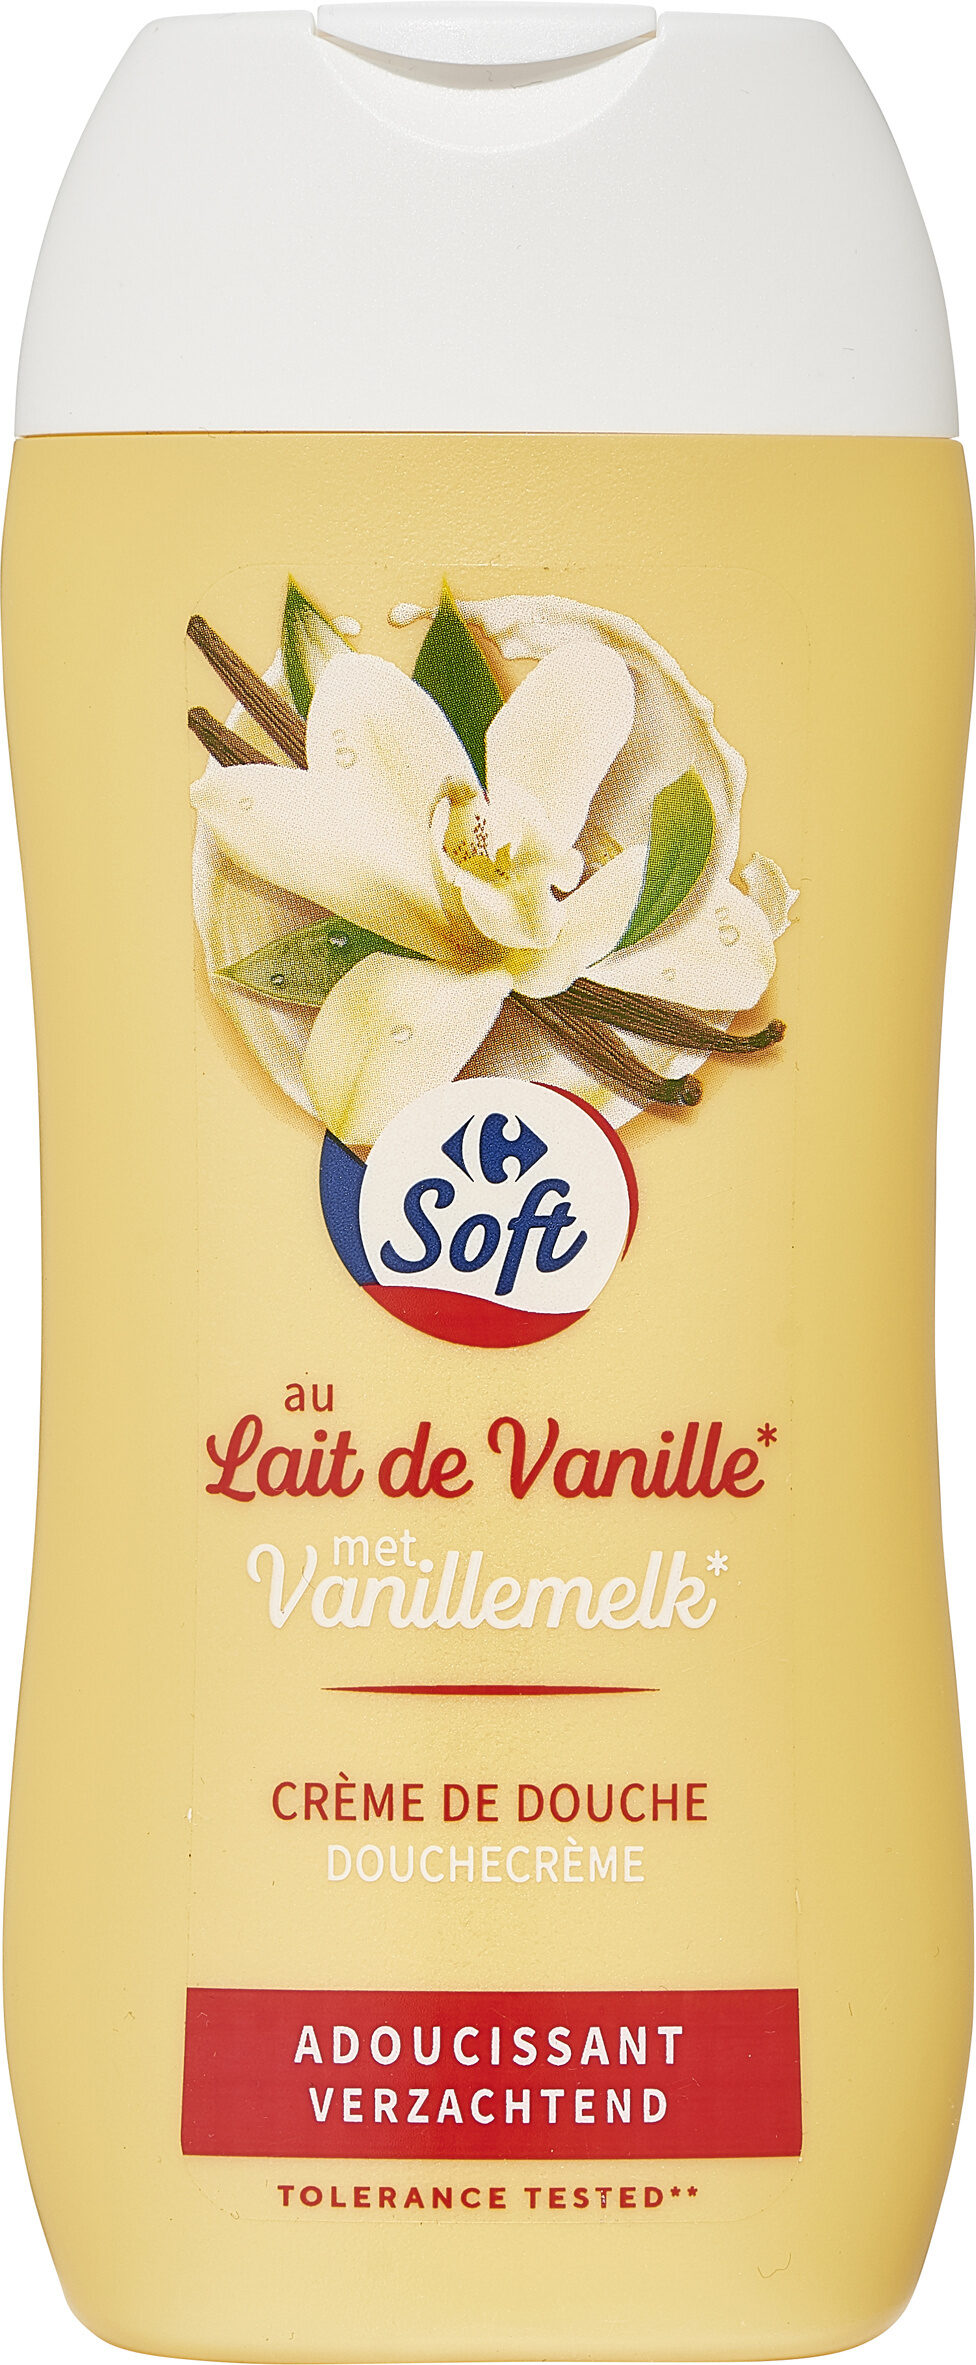 Crème de douche Lait de vanille et miel adoucissante - Product - fr